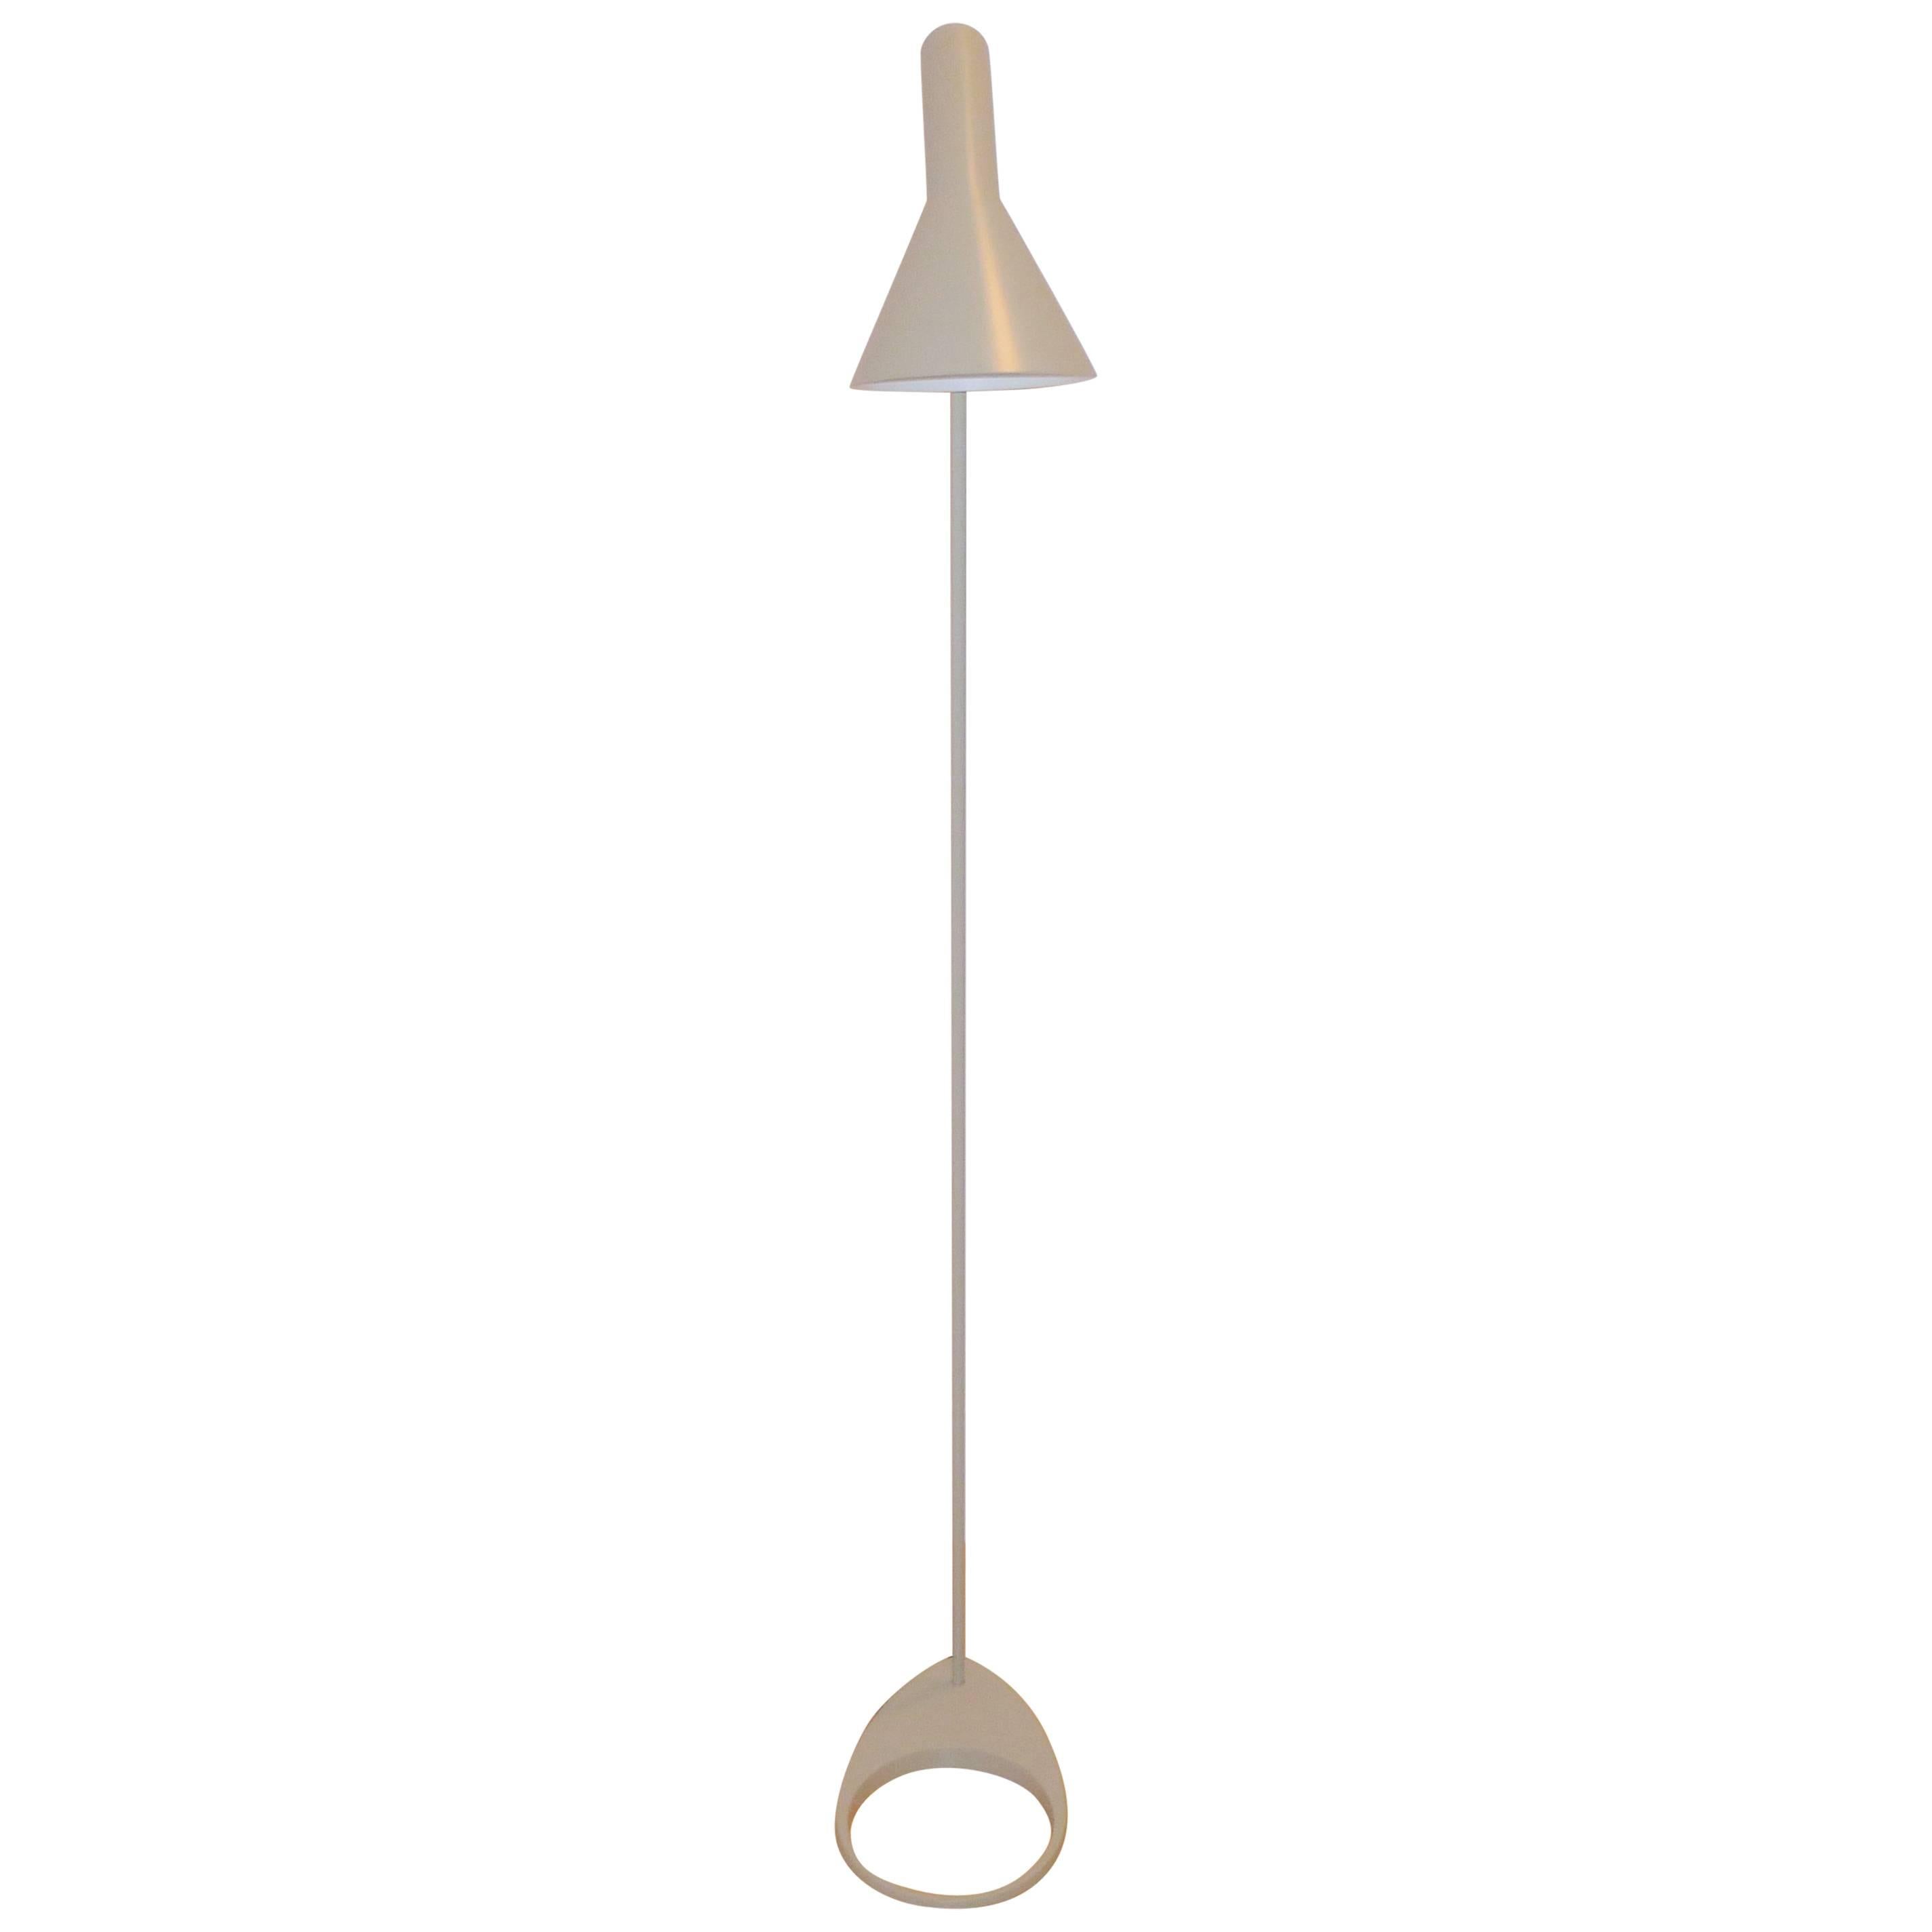 AJ Floor Lamp by Arne Jacobsen, from Louis Poulsen